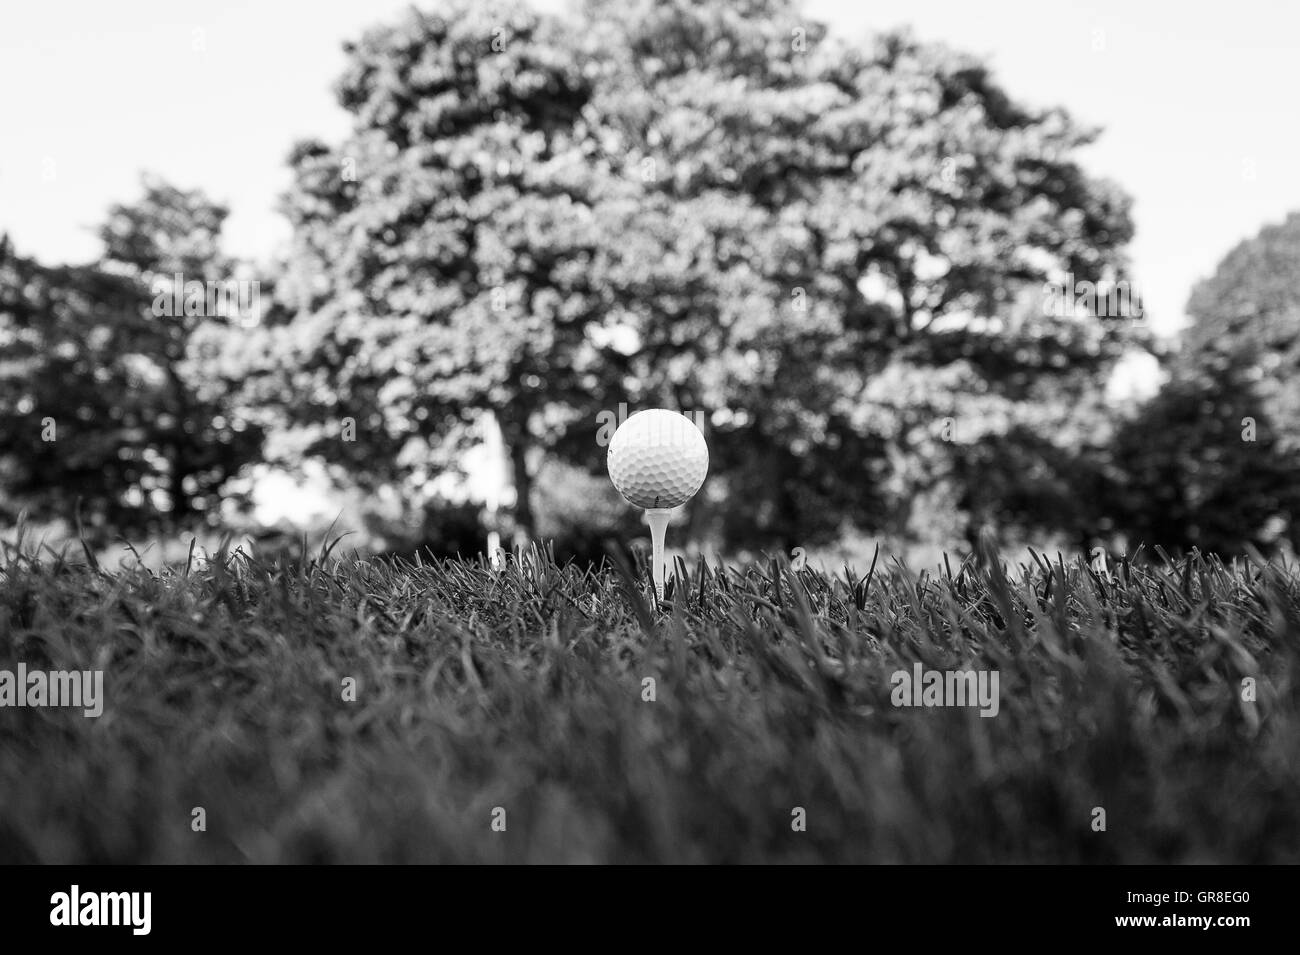 Immagine monocromatica di una pallina da golf sat sul raccordo a T con erba particolare e albero a distanza Foto Stock